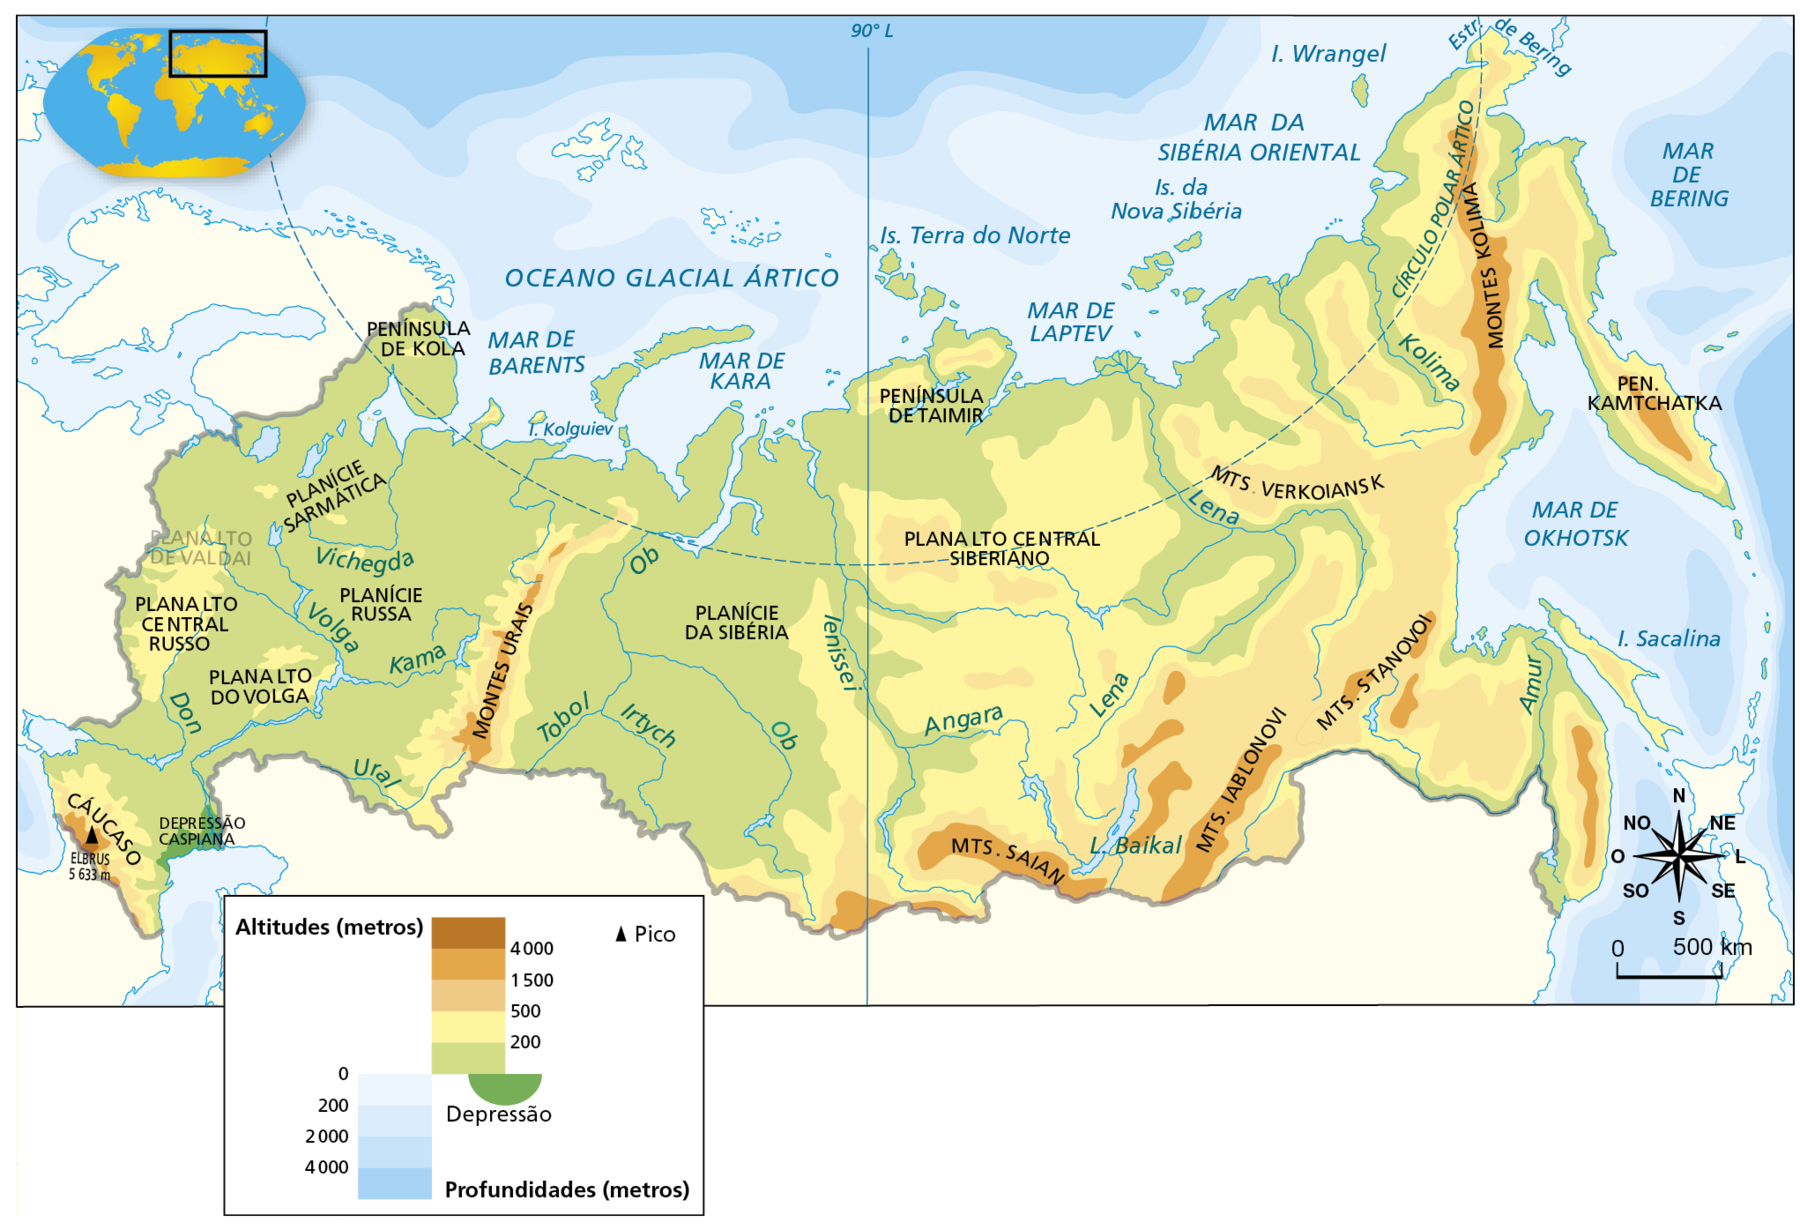 Mapa. Rússia: relevo. Mapa físico da Rússia, indicando as diversas altitudes da superfície do país, que variam de zero a 4.000 metros. Altitudes de 4.000 metros ou mais concentram-se no Cáucaso, onde está situado o Pico de Elbrus, com 5.633 metros de altitude. Altitudes entre 1.500 metros e 4.000 metros: Montes Urais, Montes Saian, Montes Iablonovi, Montes Stanovoi, Montes Kolima e Península Kamtchatka. Altitudes entre 500 metros e 1.500 metros: Planalto central siberiano, porção sul e oriental do país, abrangendo os Montes Verkoiansk; áreas do entorno dos Montes Urais; área na Península de Taimir. As terras com altitudes ente 200 e 500 metros ocorrem no Planalto Central Russo, Planalto do Volga e Península de Kola, na porção oeste da Rússia; áreas na porção centro-oriental. Altitudes entre zero e 200 metros concentram-se na porção centro-oeste do país: Planície Sarmática, Planície Russa e Planície da Sibéria. A Depressão Caspiana ocorre na porção oeste. Na parte inferior direita do mapa, rosa dos ventos e escala de 0 a 500 quilômetros.